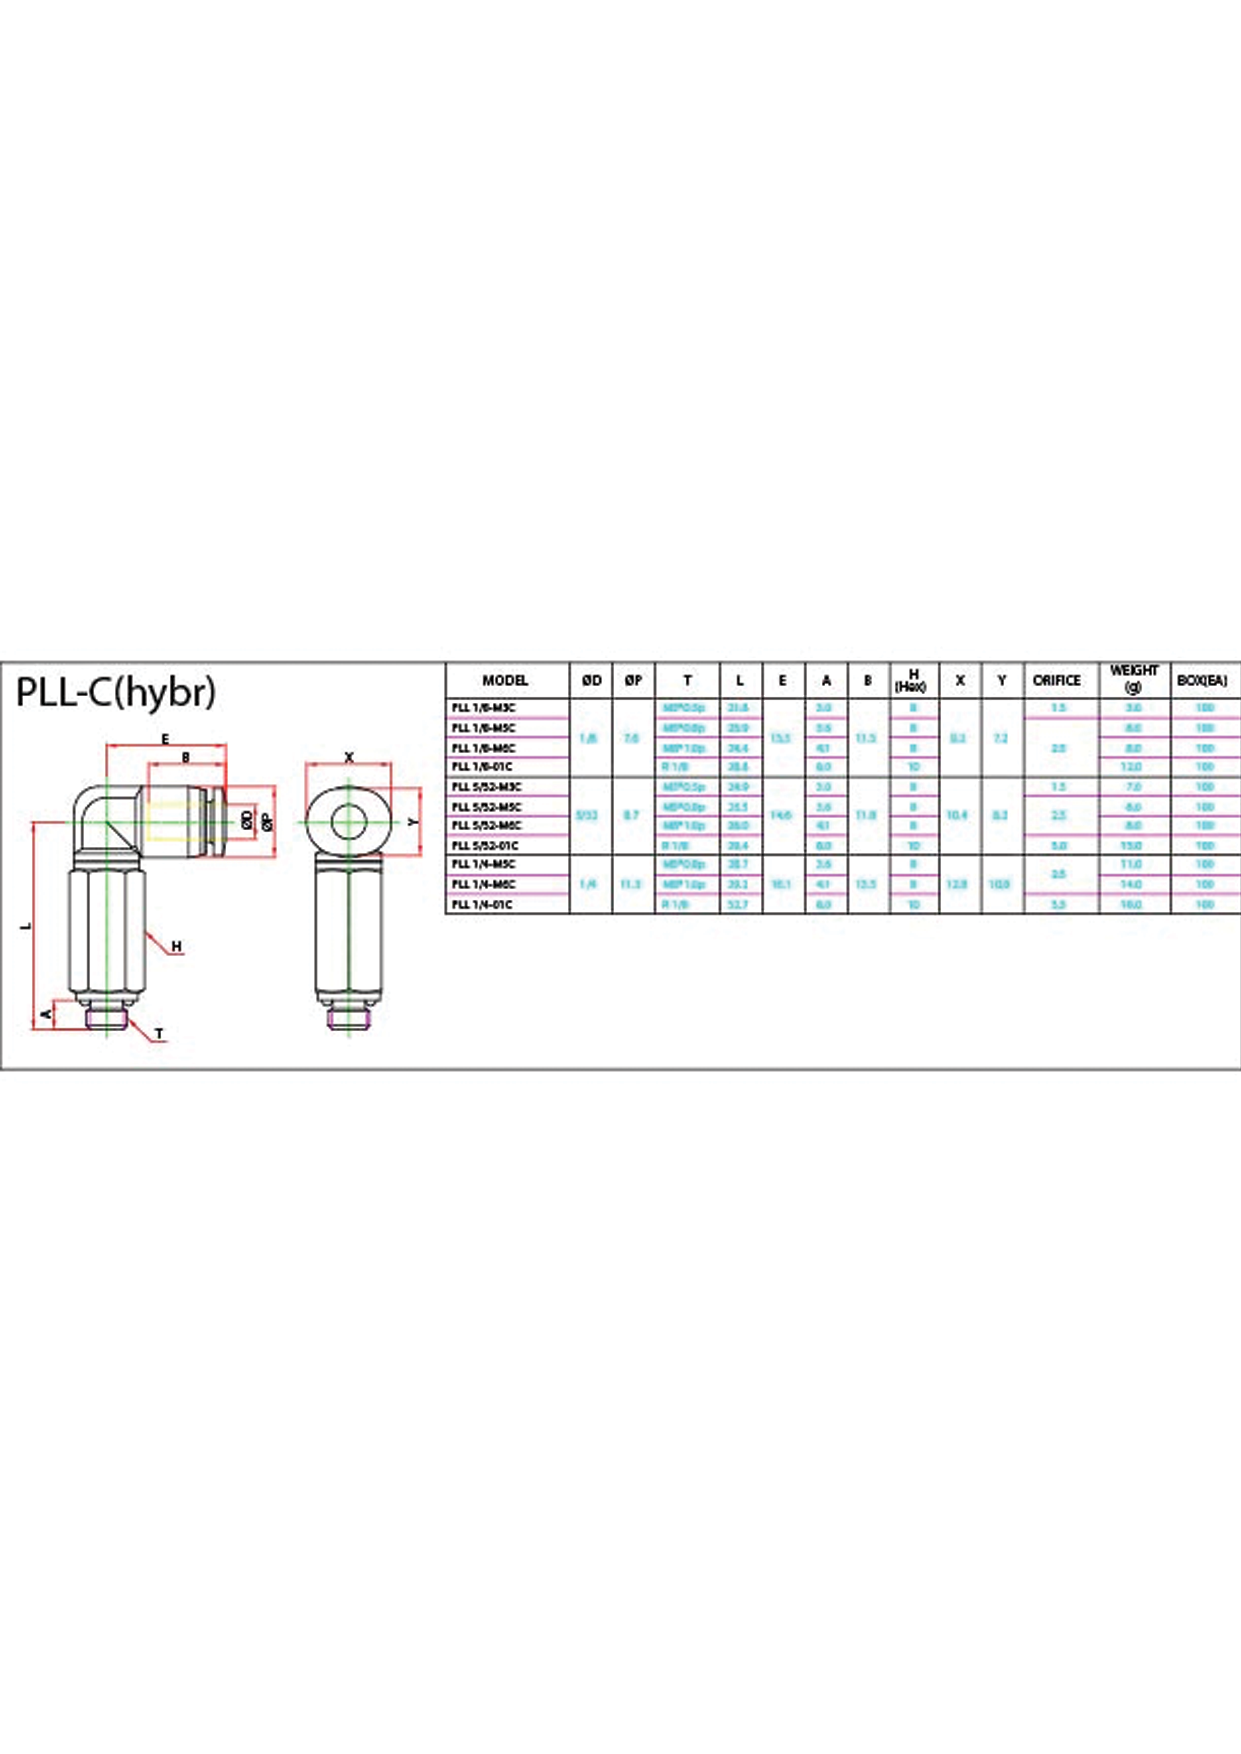 PLL-C (Hybr) Data Sheet ( 119 KB )